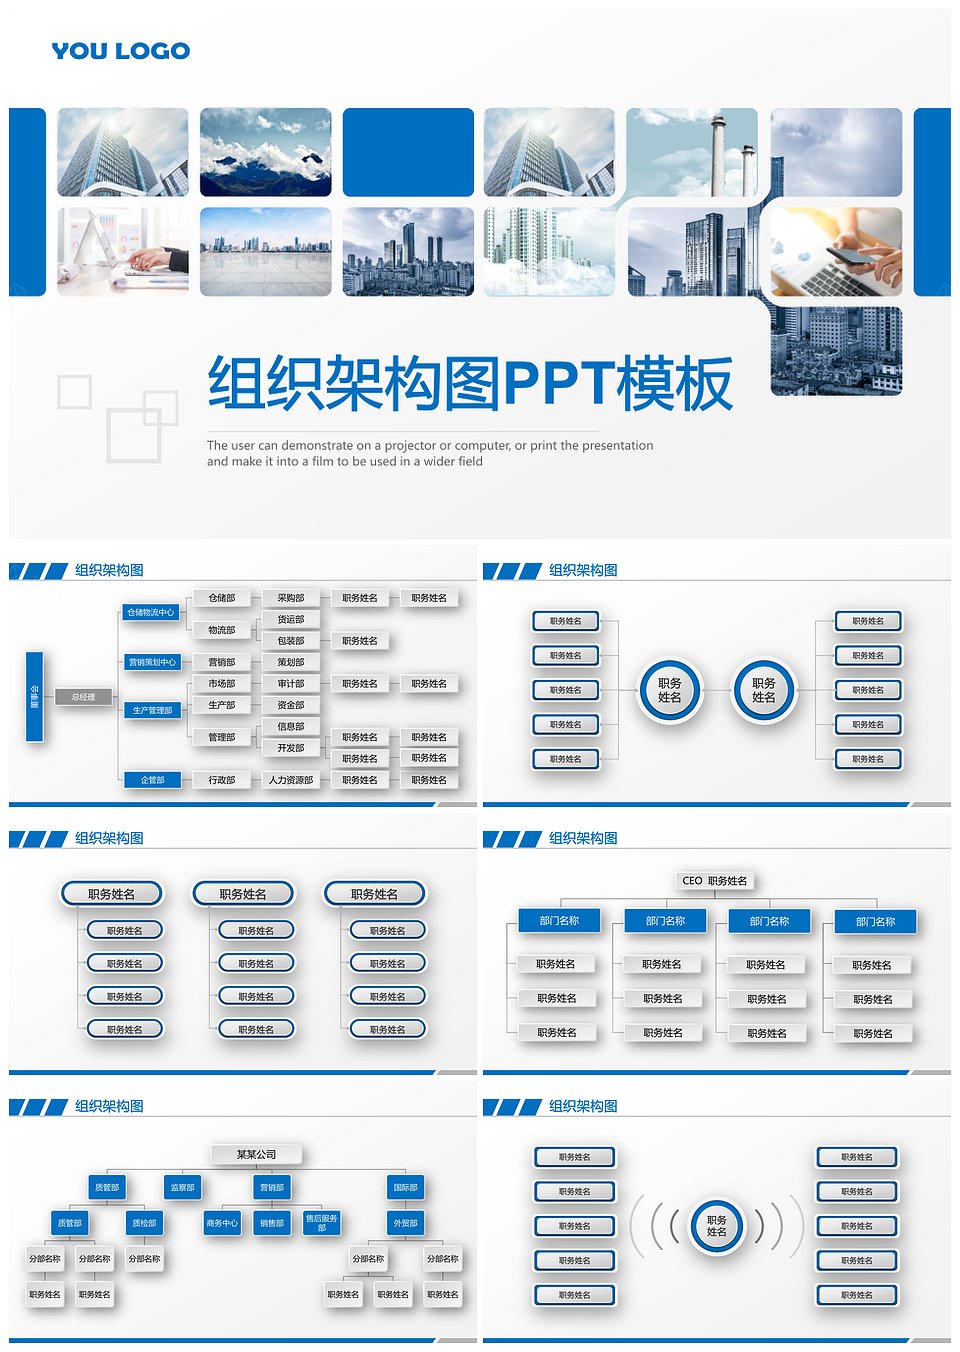 蓝色简约企业组织架构图PPT模板下载